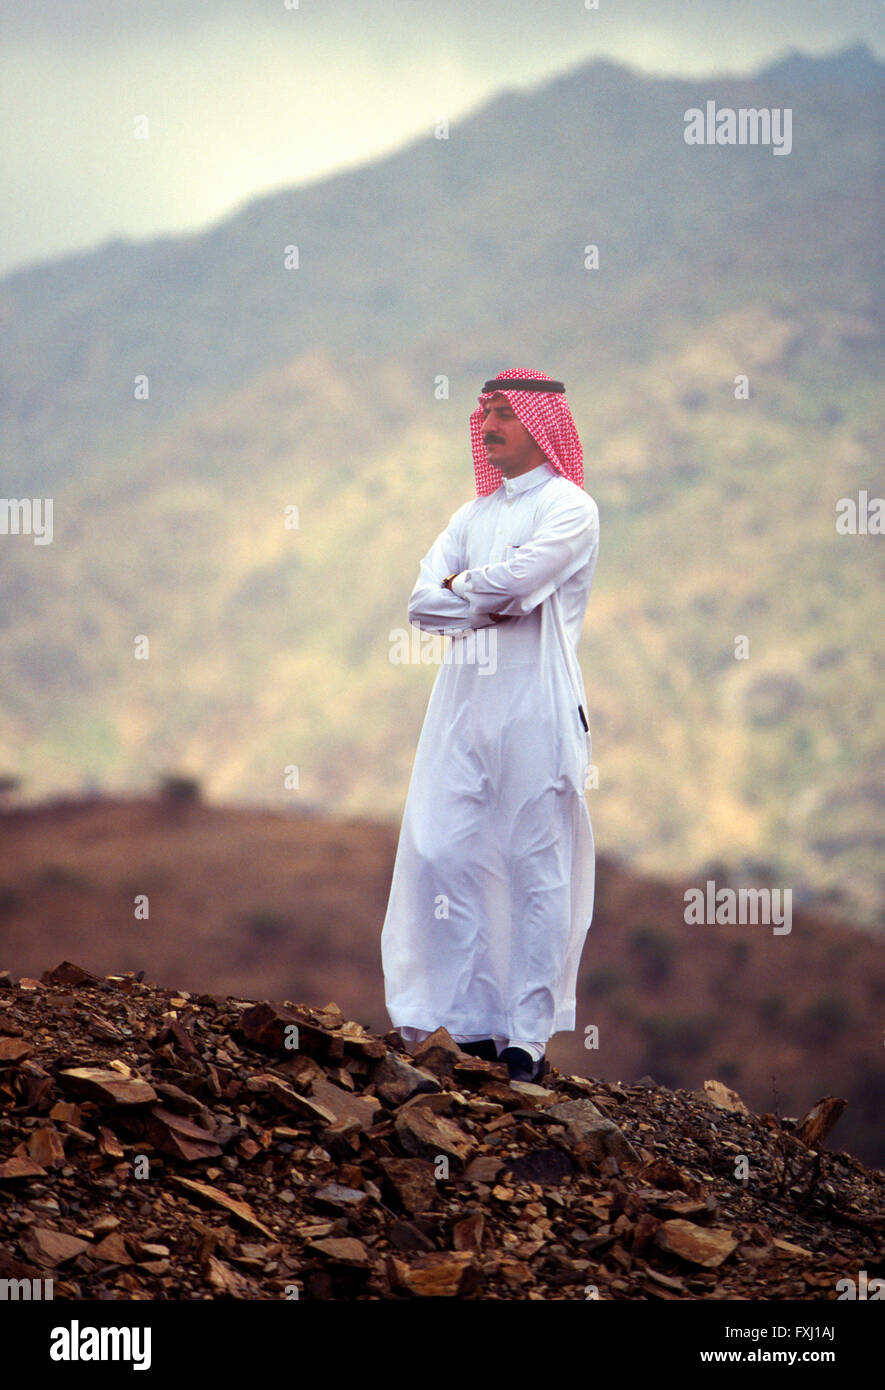 Portrait extérieur des Etats arabes homme portant des vêtements traditionnels ; la région d'Asir, Royaume d'Arabie Saoudite Banque D'Images